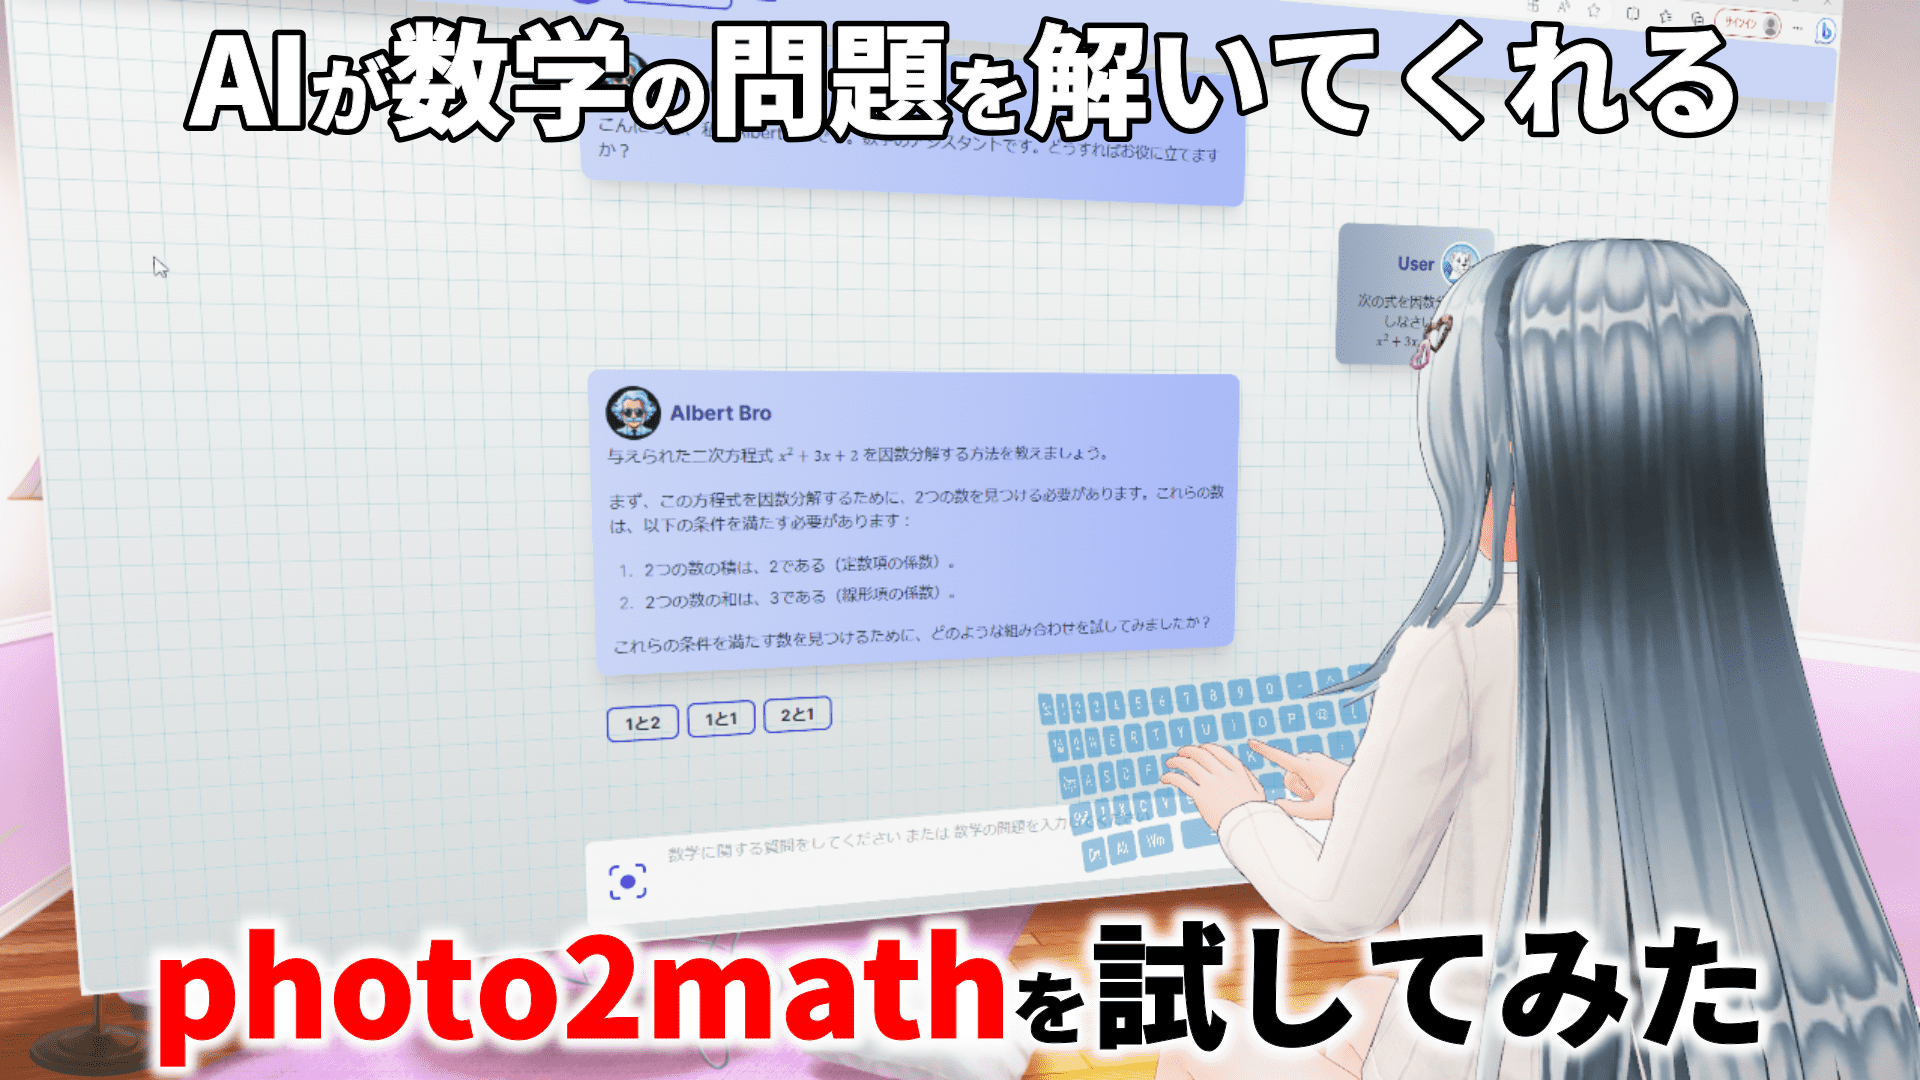 【AIが数学の問題を解いてくれる】photo2mathを試してみた